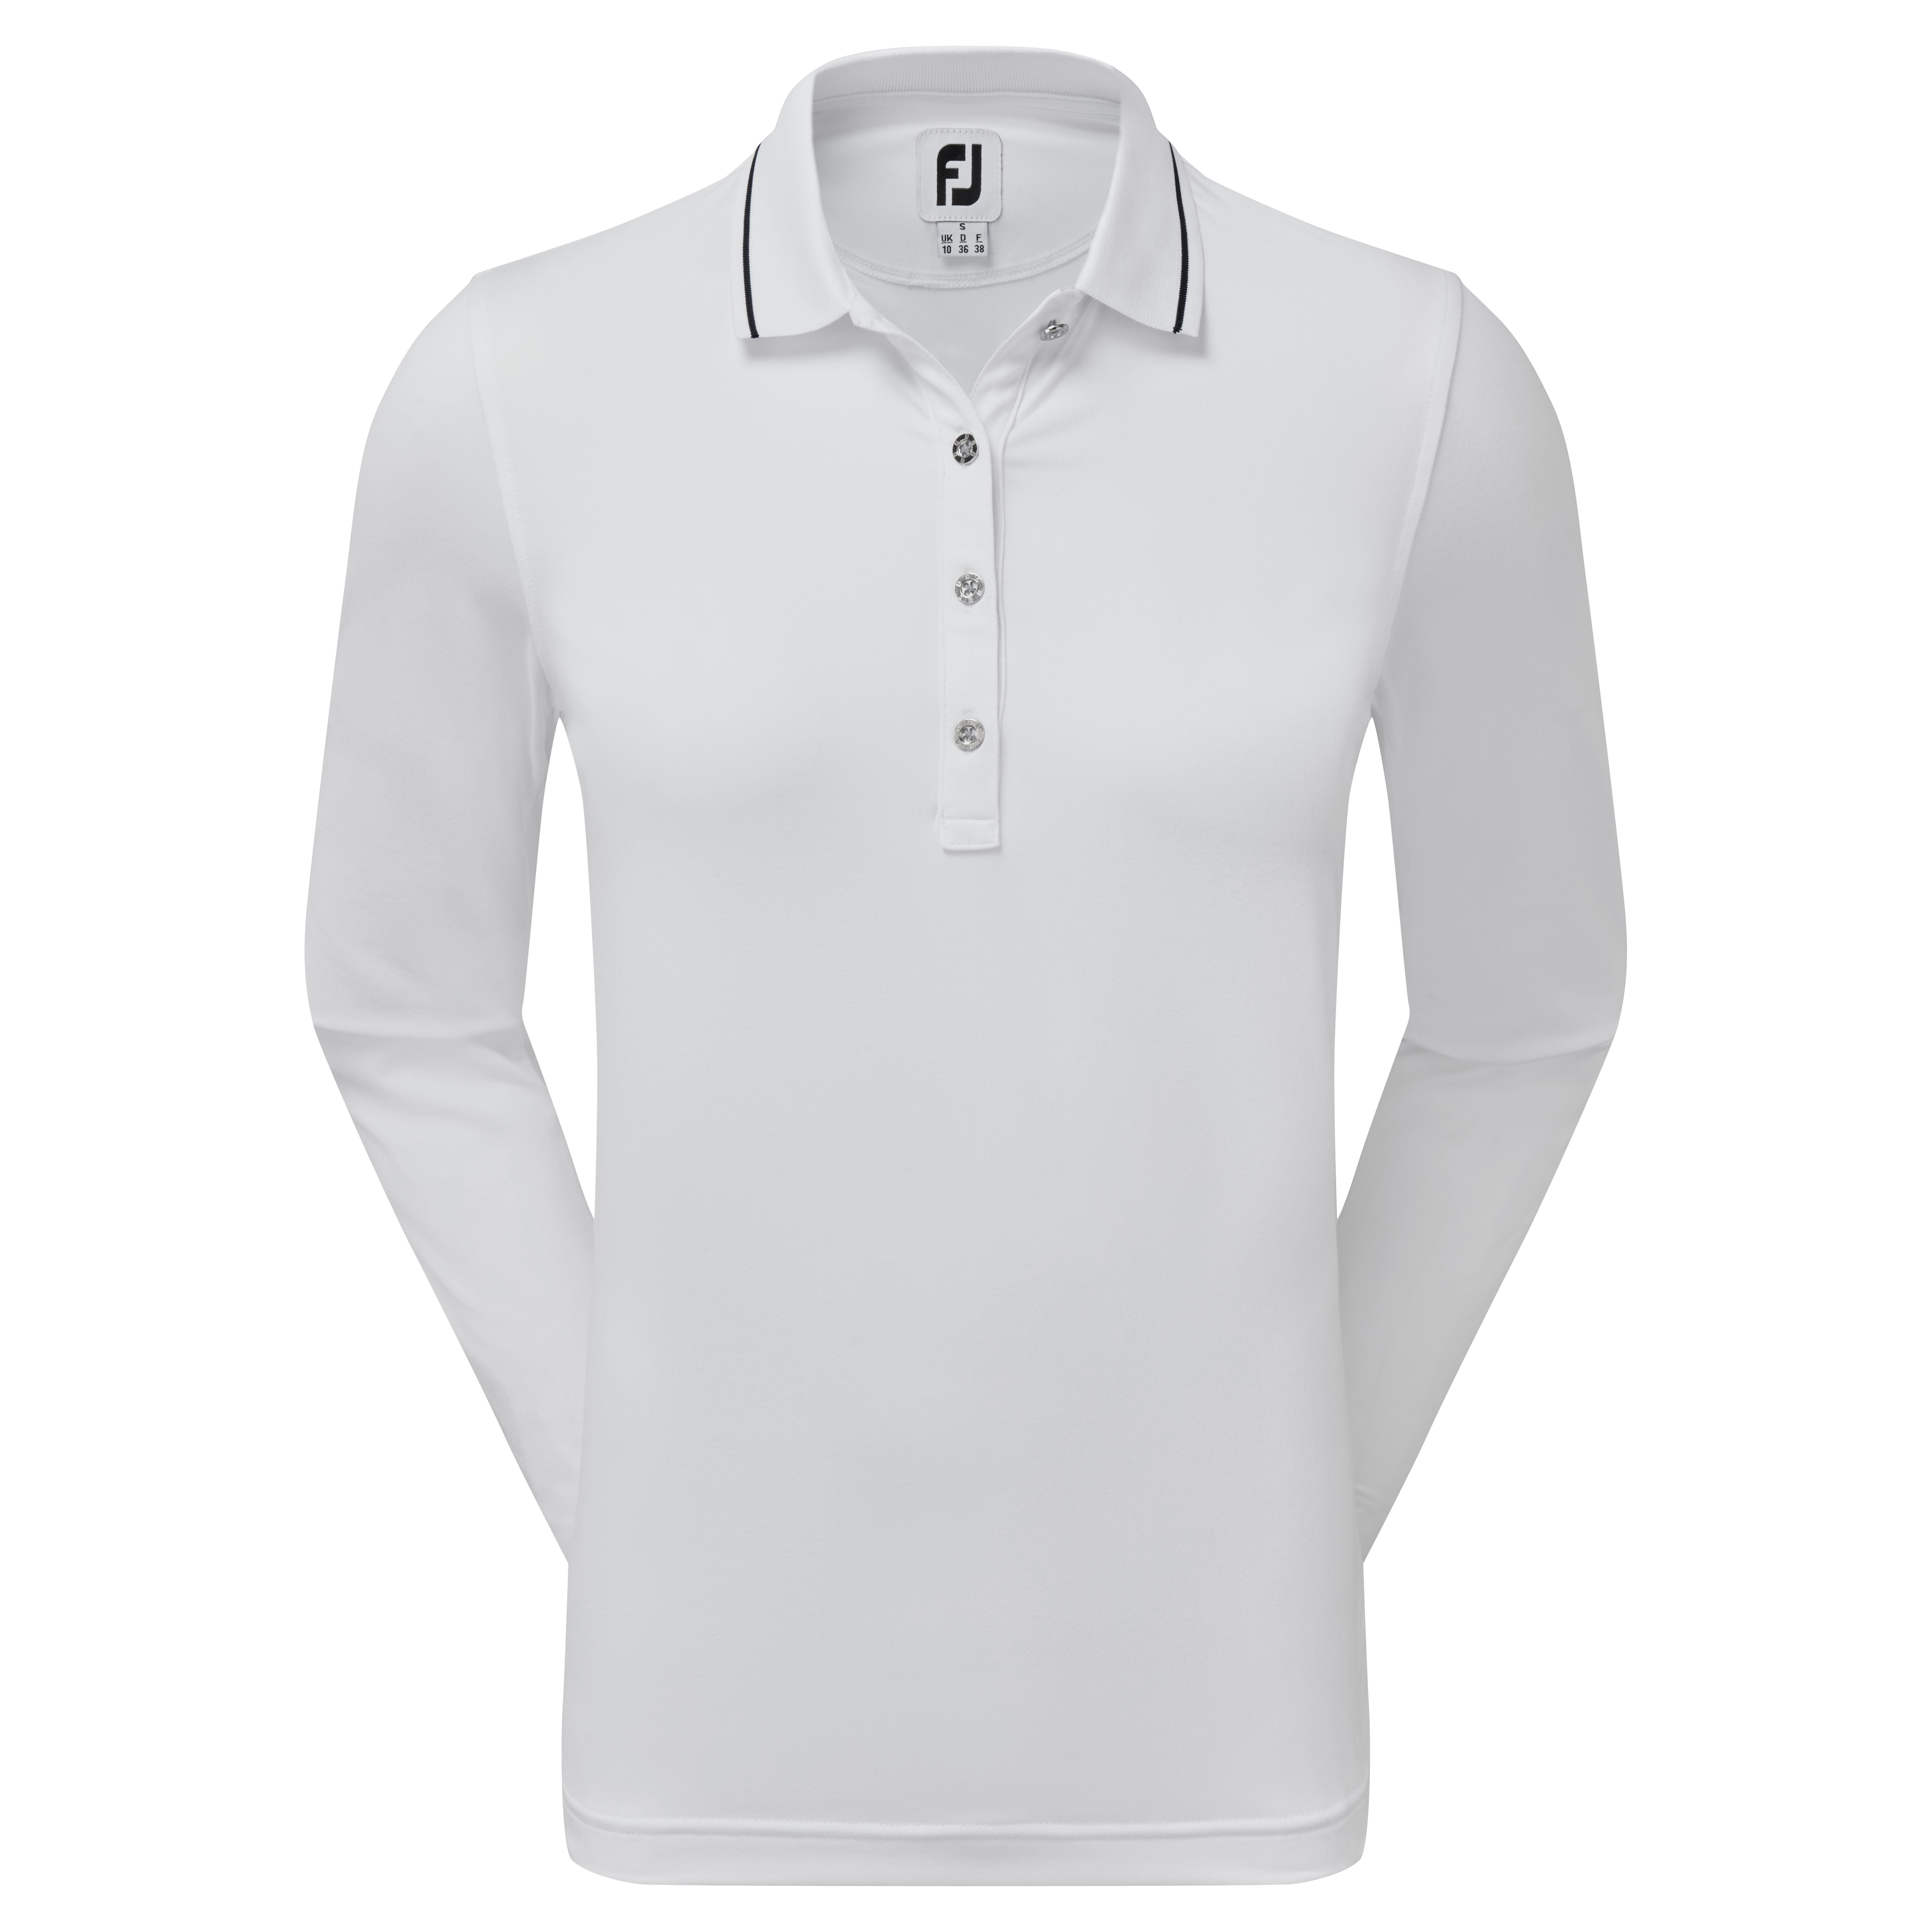 FootJoy Thermal dámské golfové triko s dlouhým rukávem, bílé, vel. M